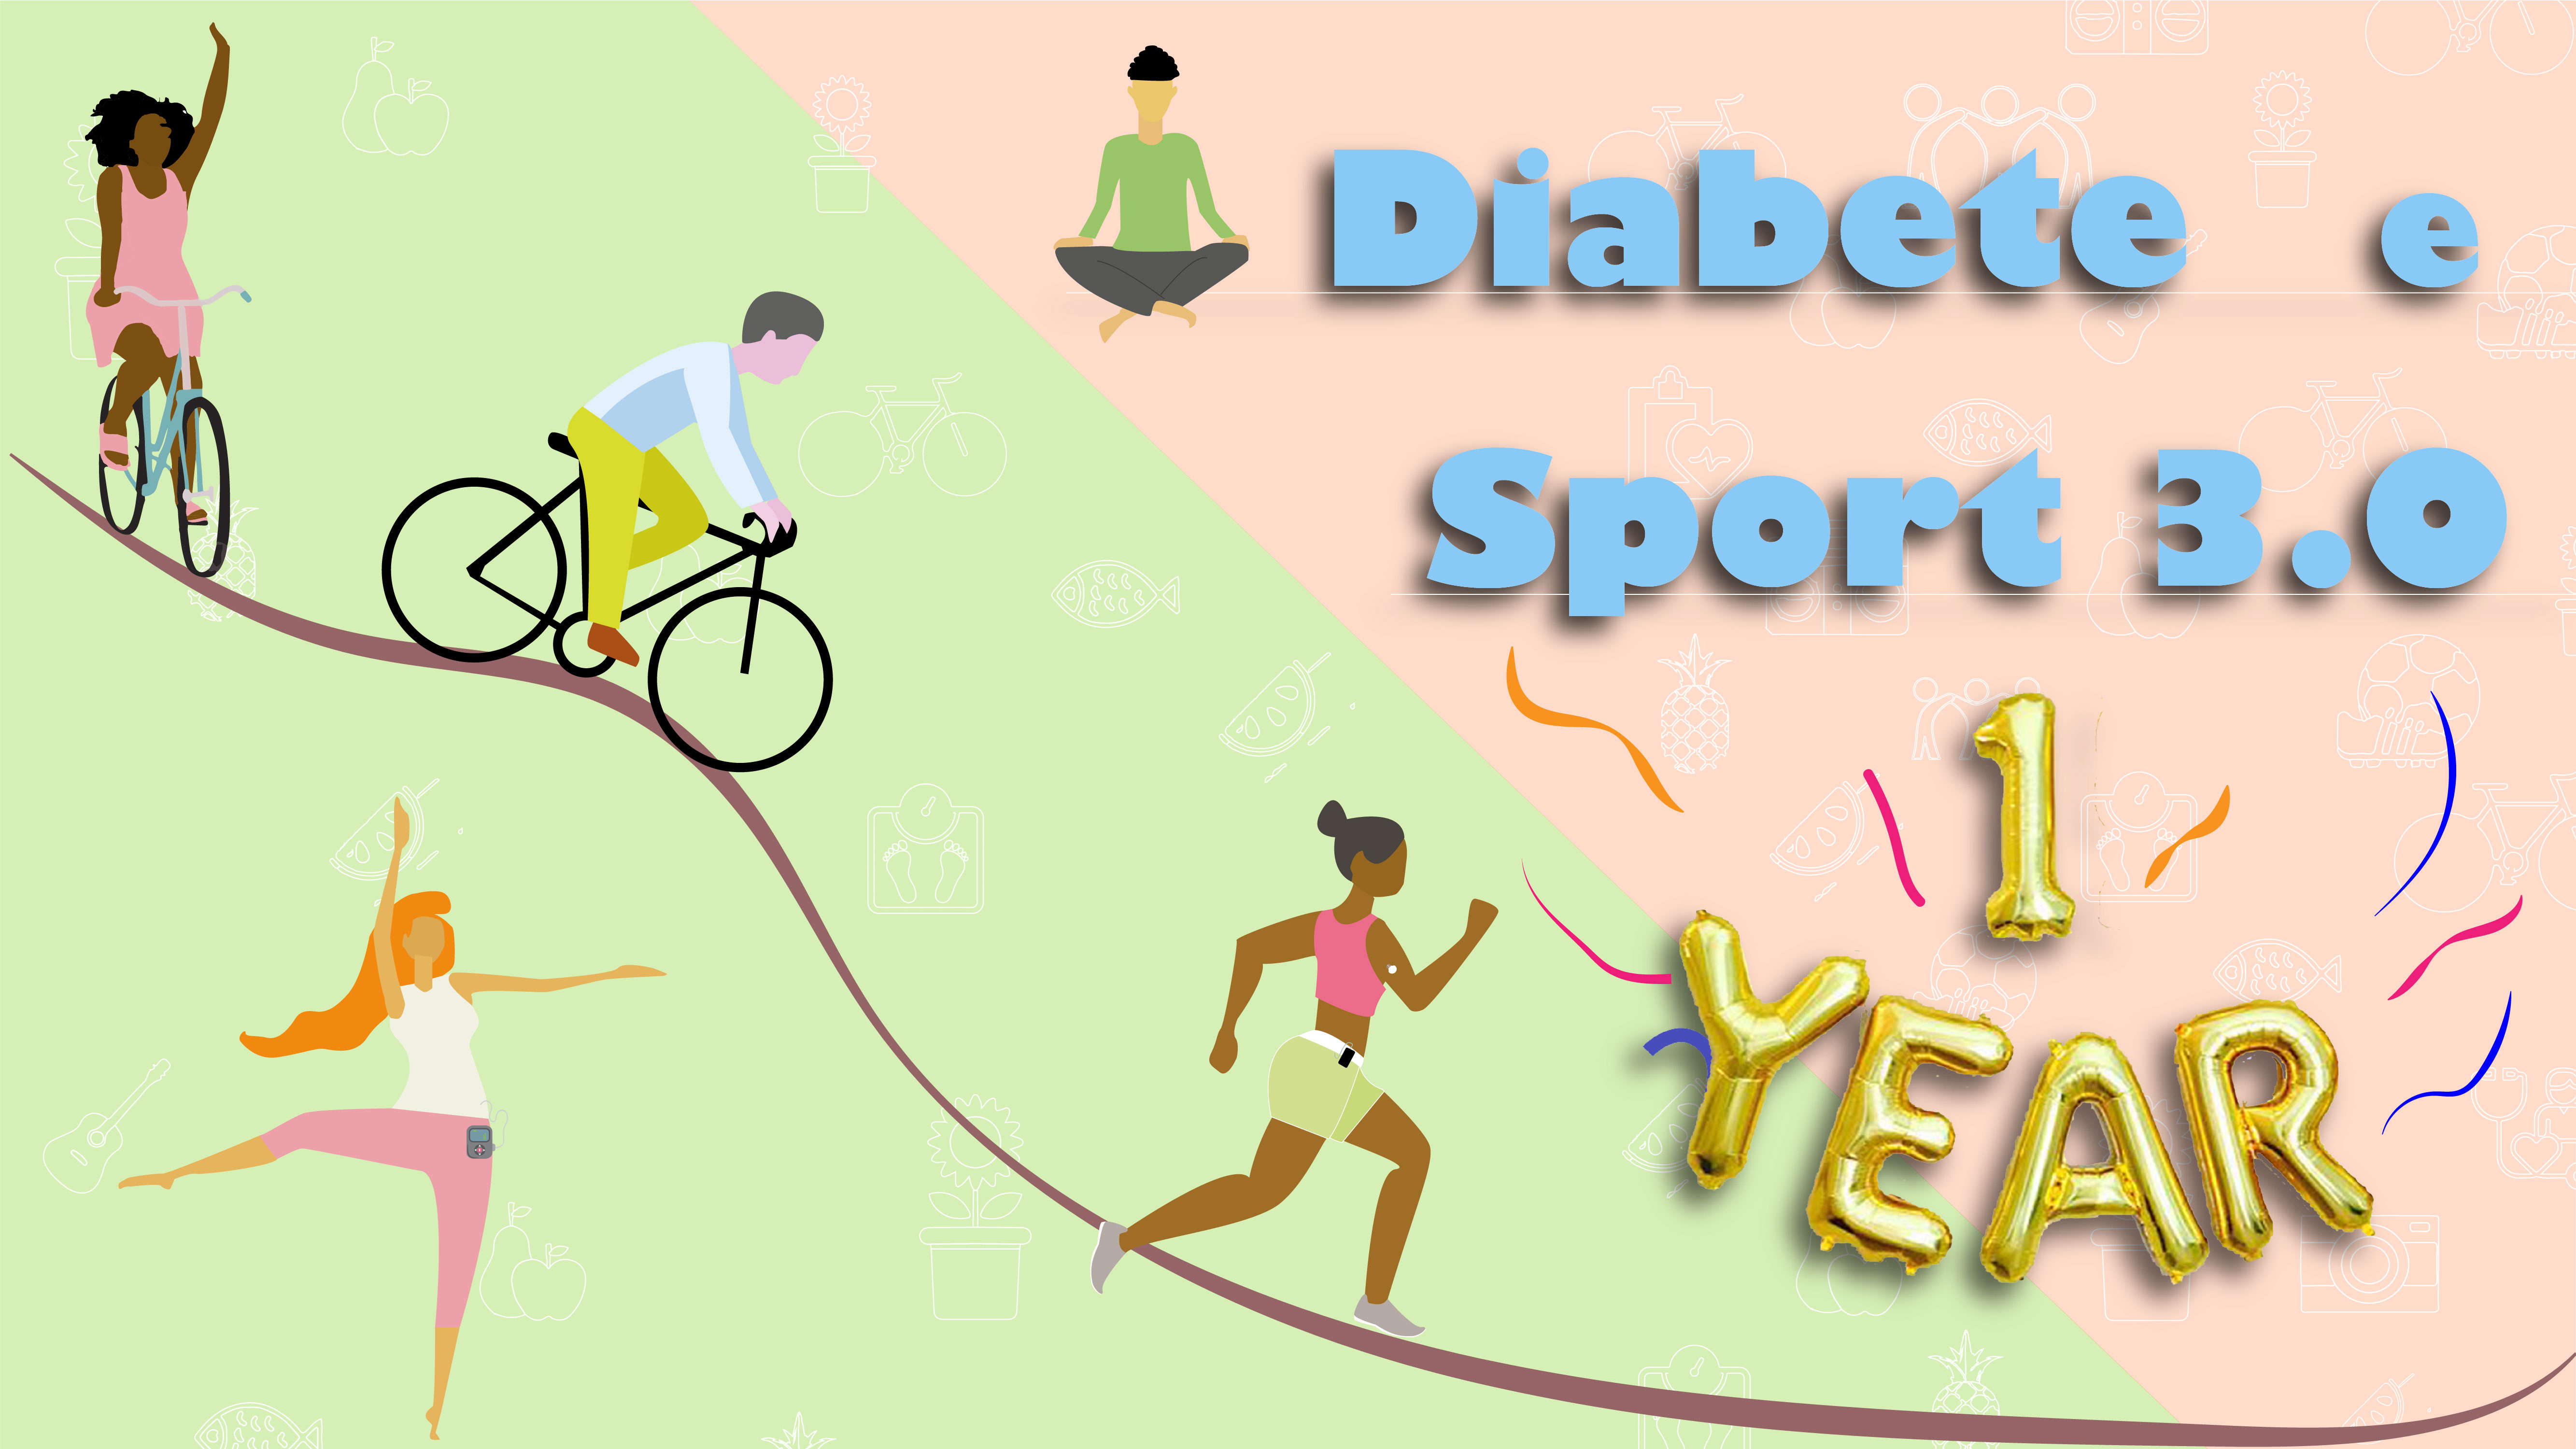 Diabete e Sport 3.0 compie 1 anno